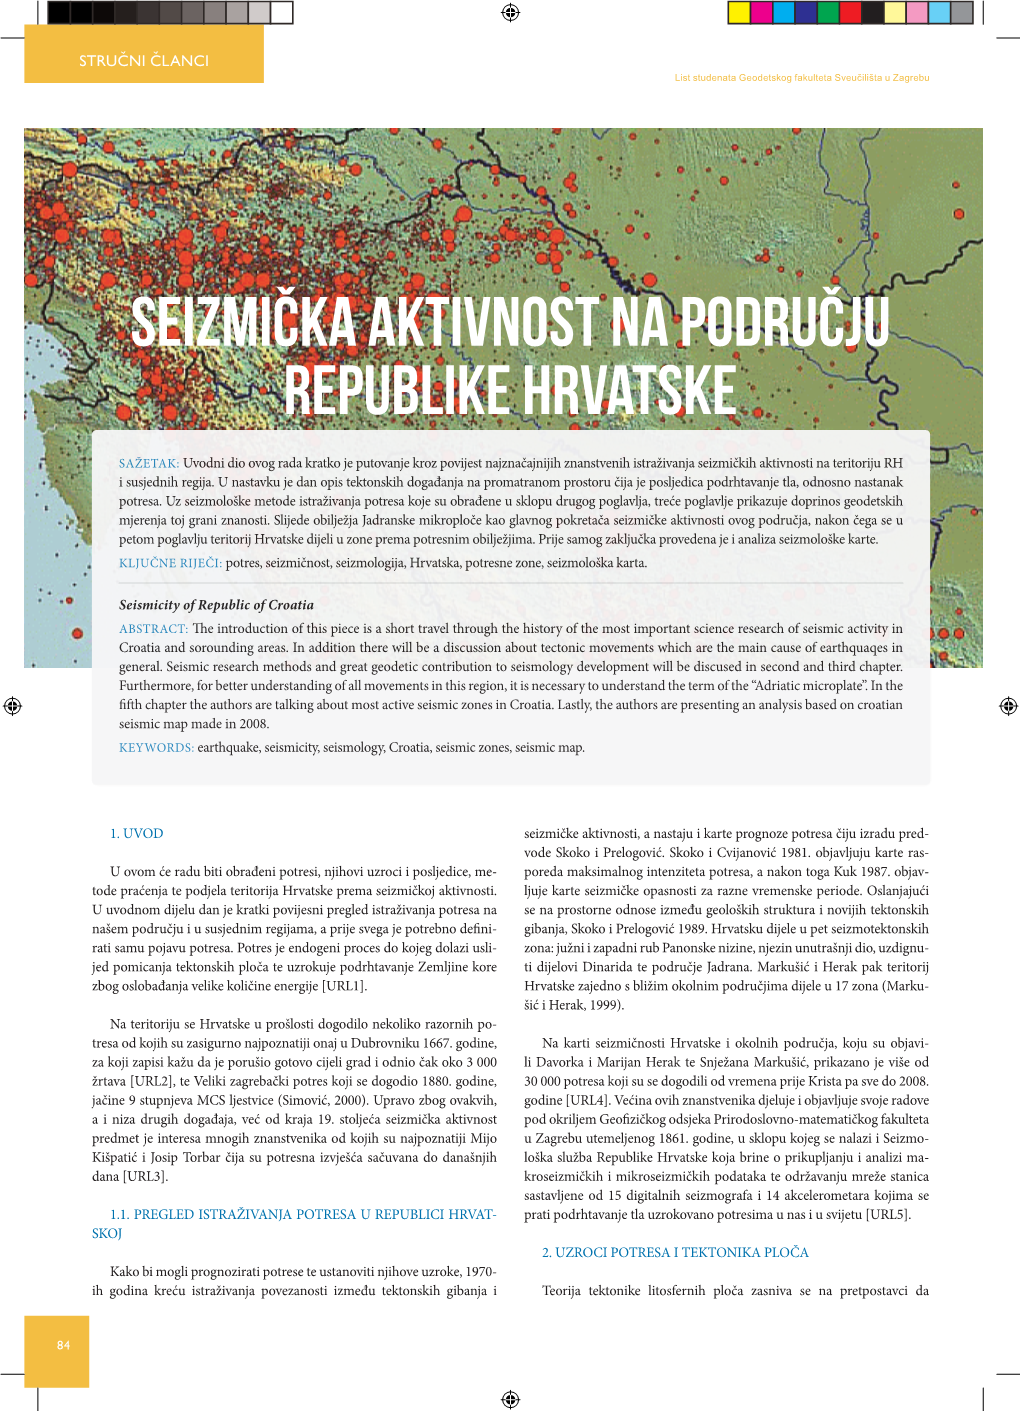 Seizmička Aktivnost Na Području Republike Hrvatske